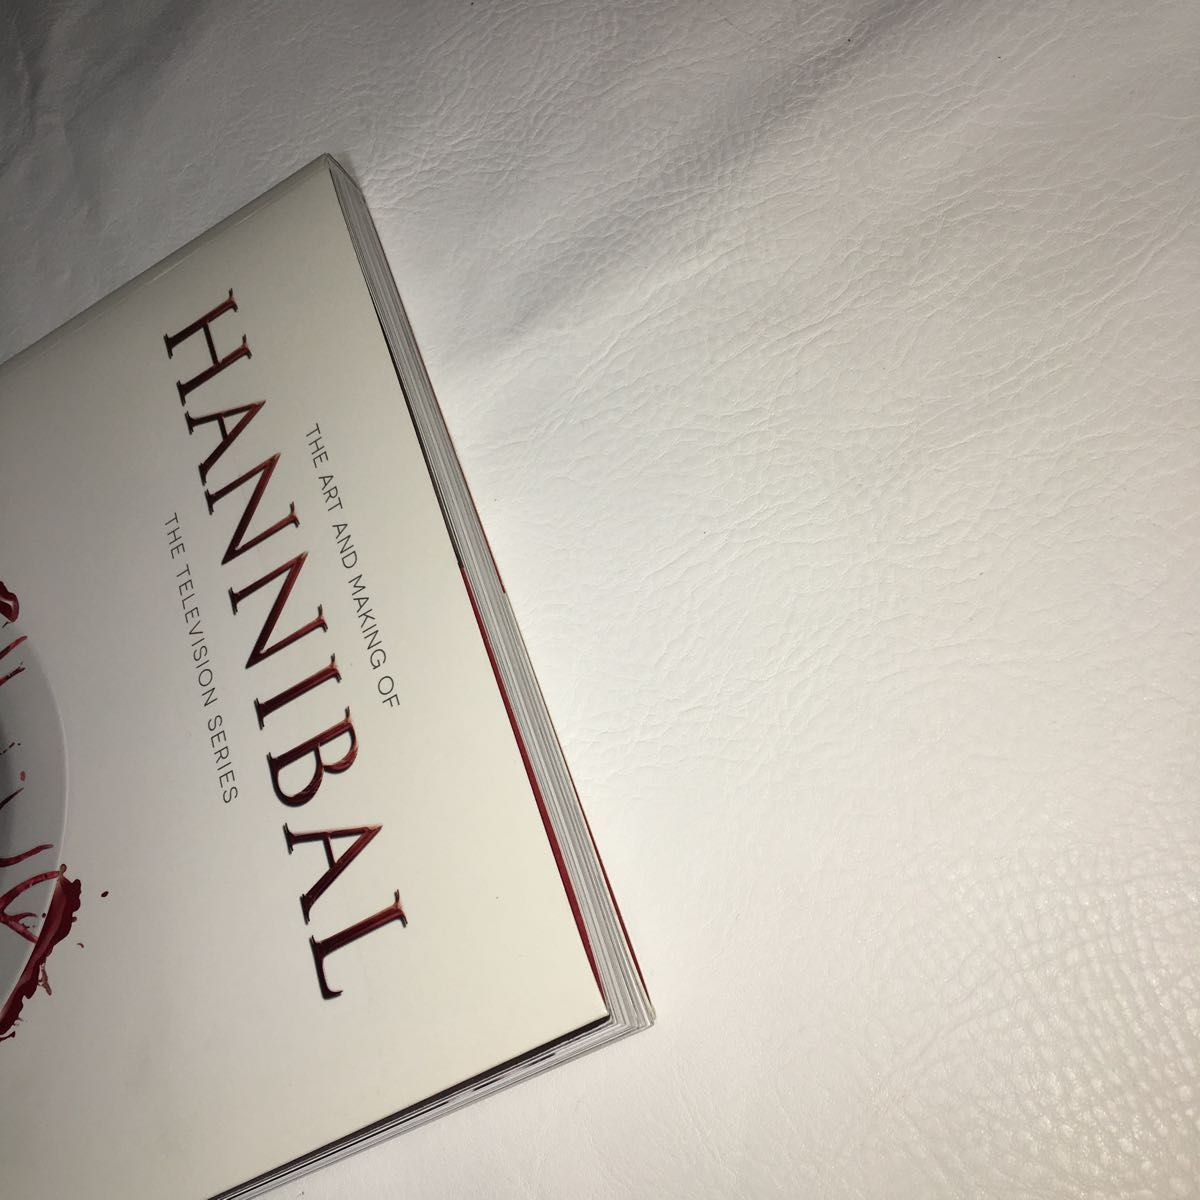 ハンニバル 設定資料集 Art and Making of Hannibal